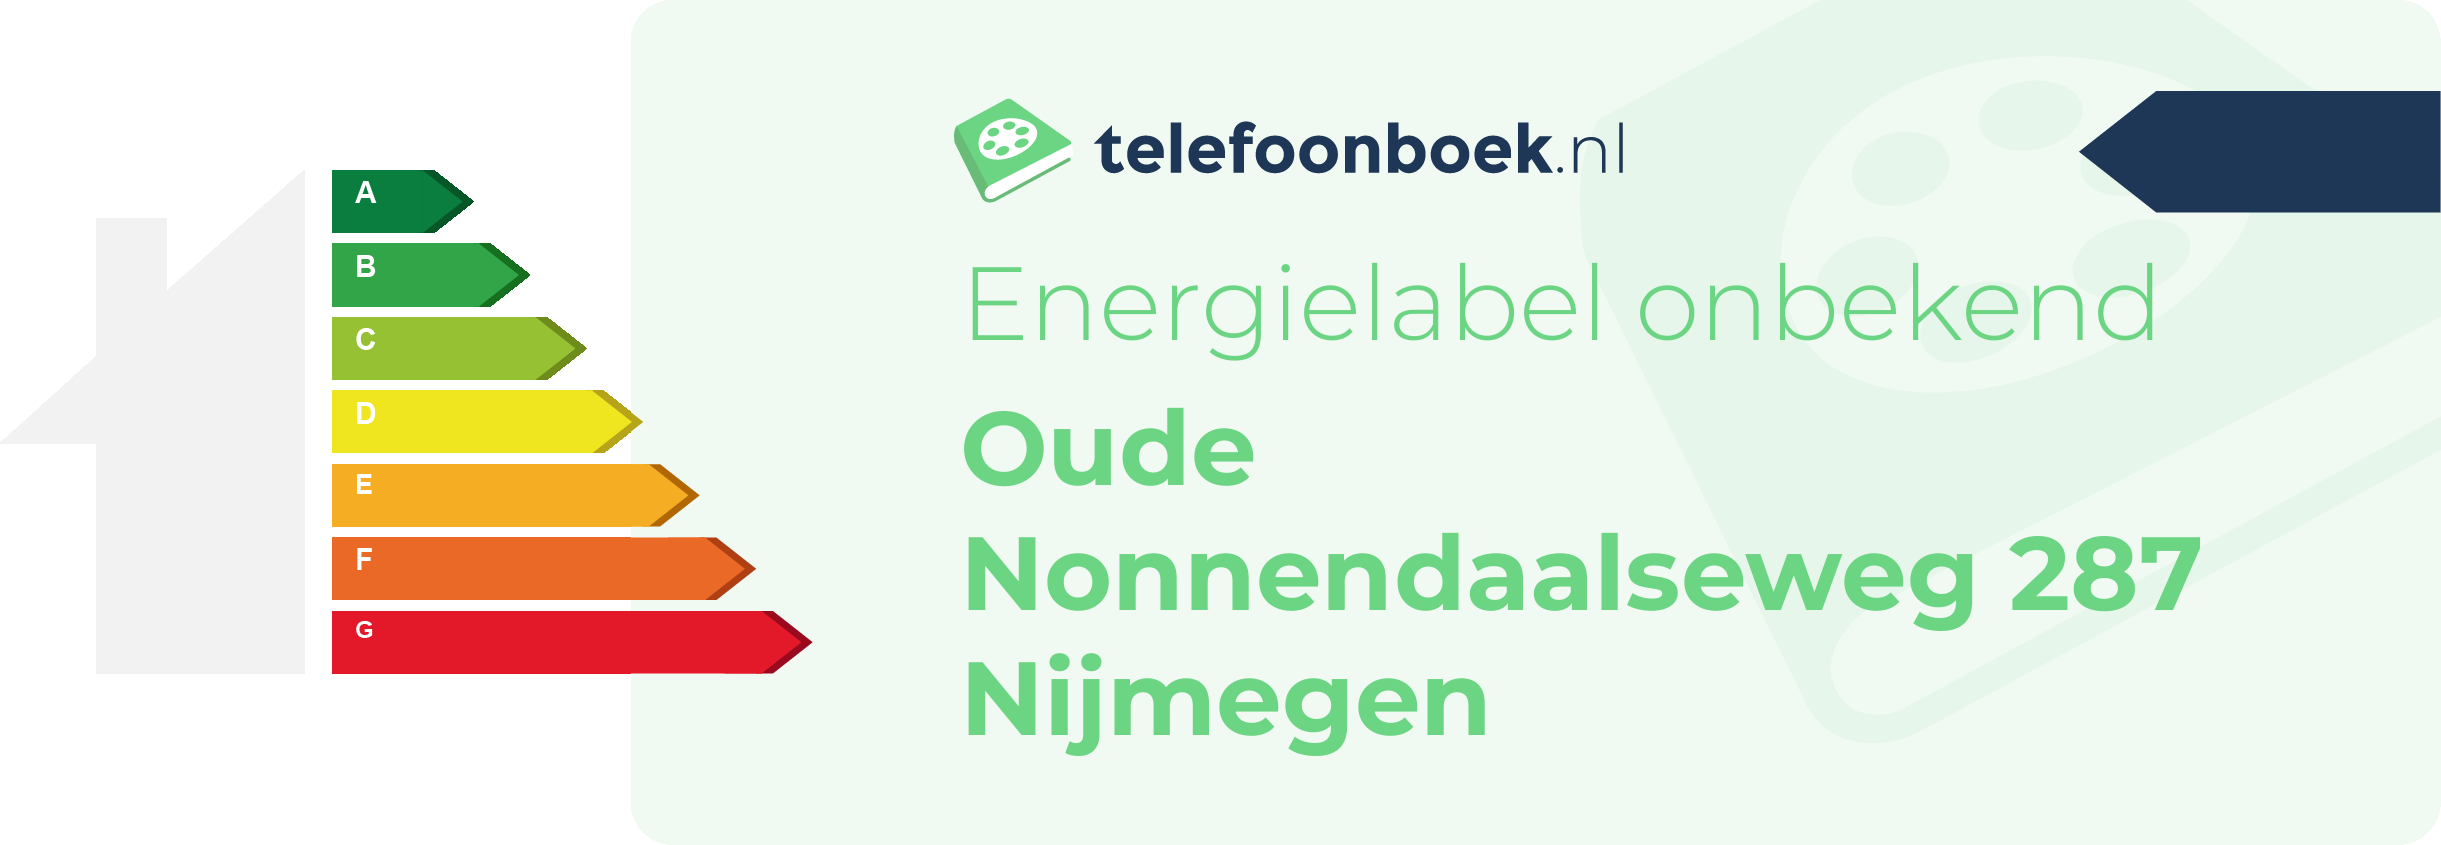 Energielabel Oude Nonnendaalseweg 287 Nijmegen